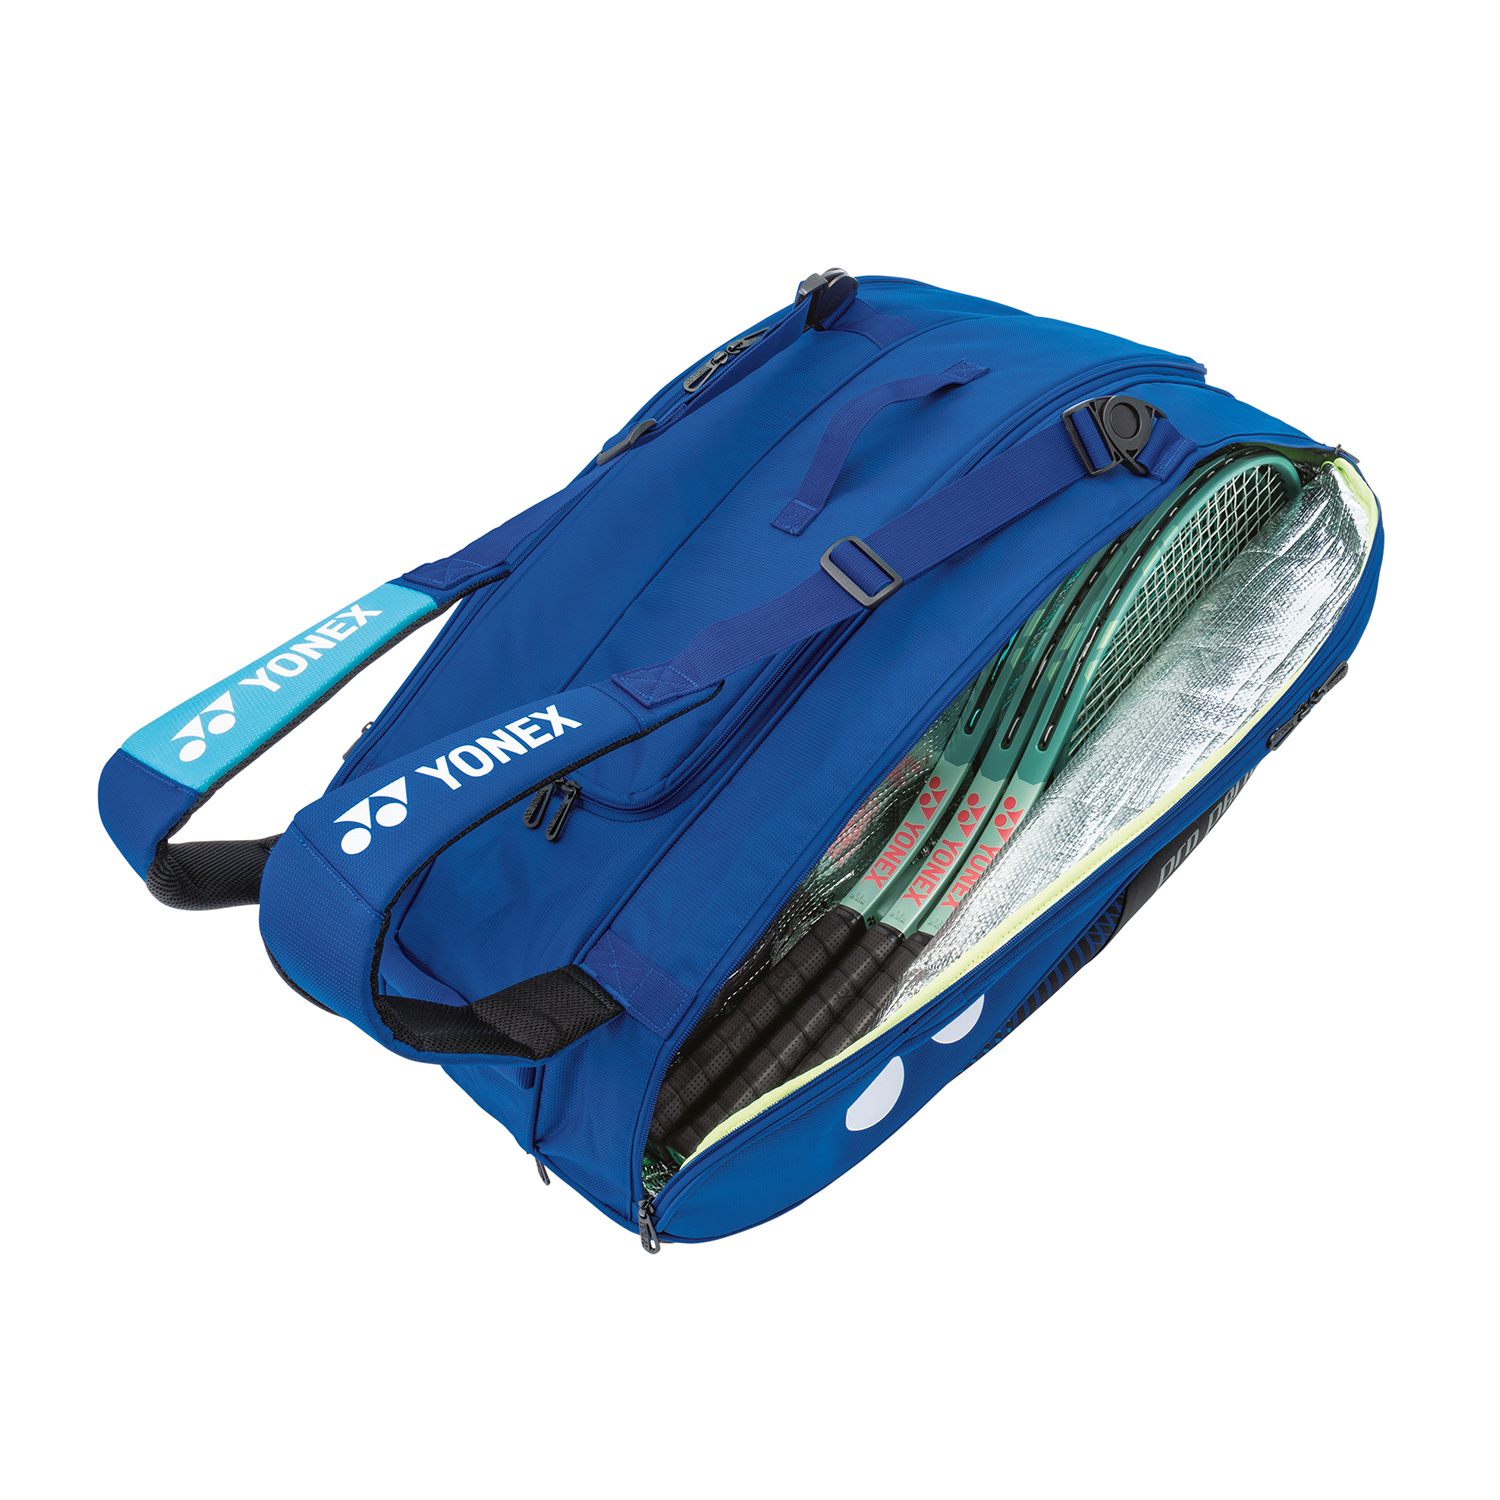 Yonex Bag Pro x 9 Borsa - Cobalt Blu